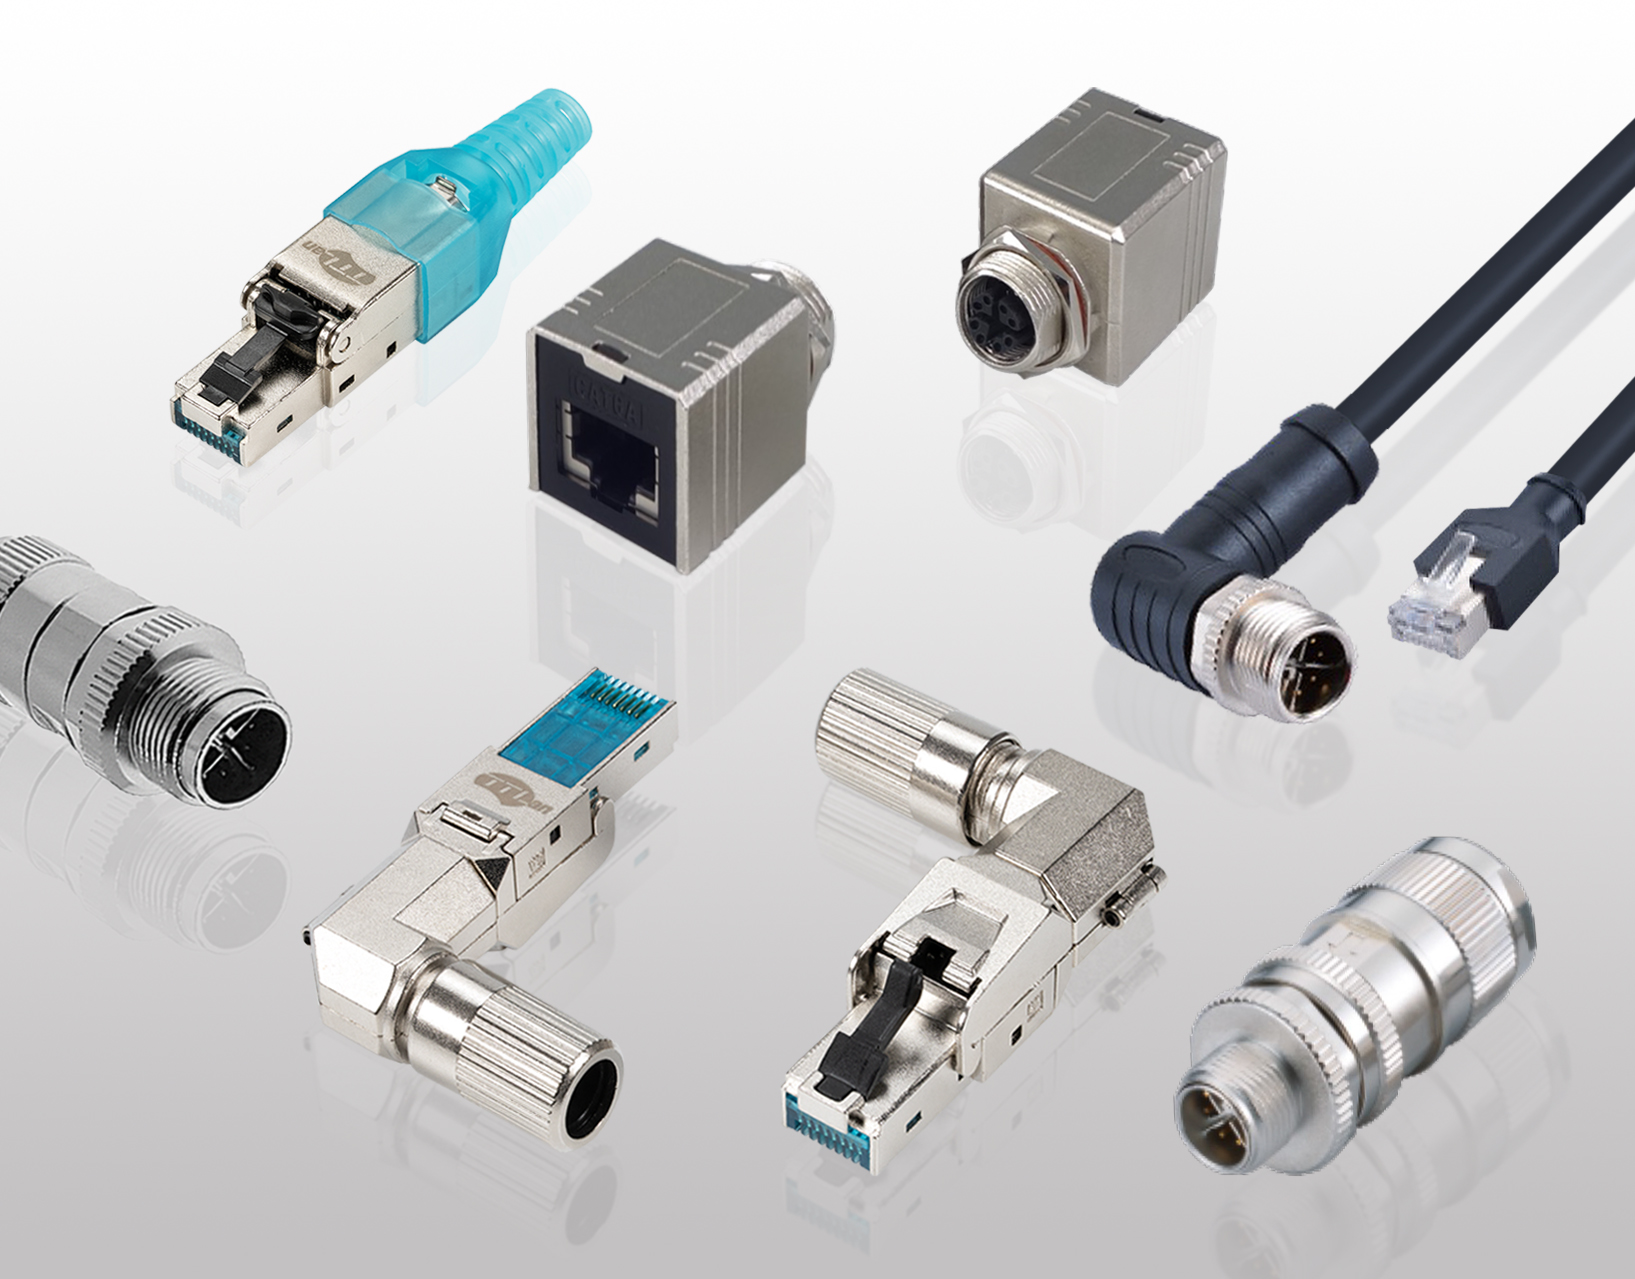 Komponenten für dasIndustrial Ethernet